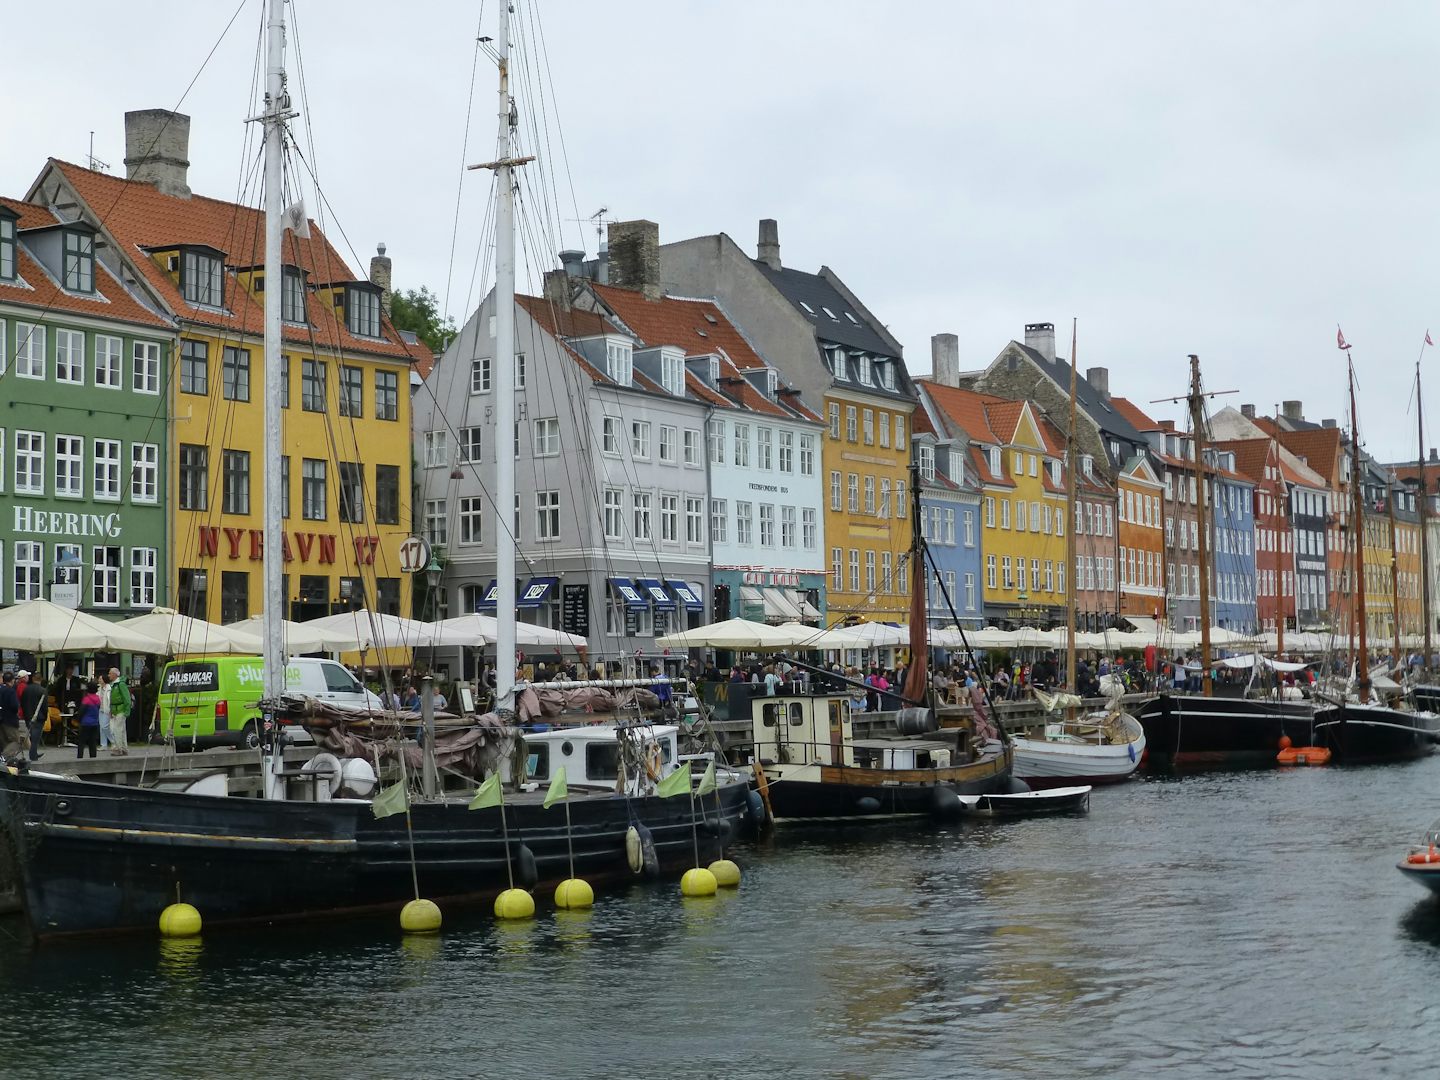 Colors of Copenhagen (Nyhaven)